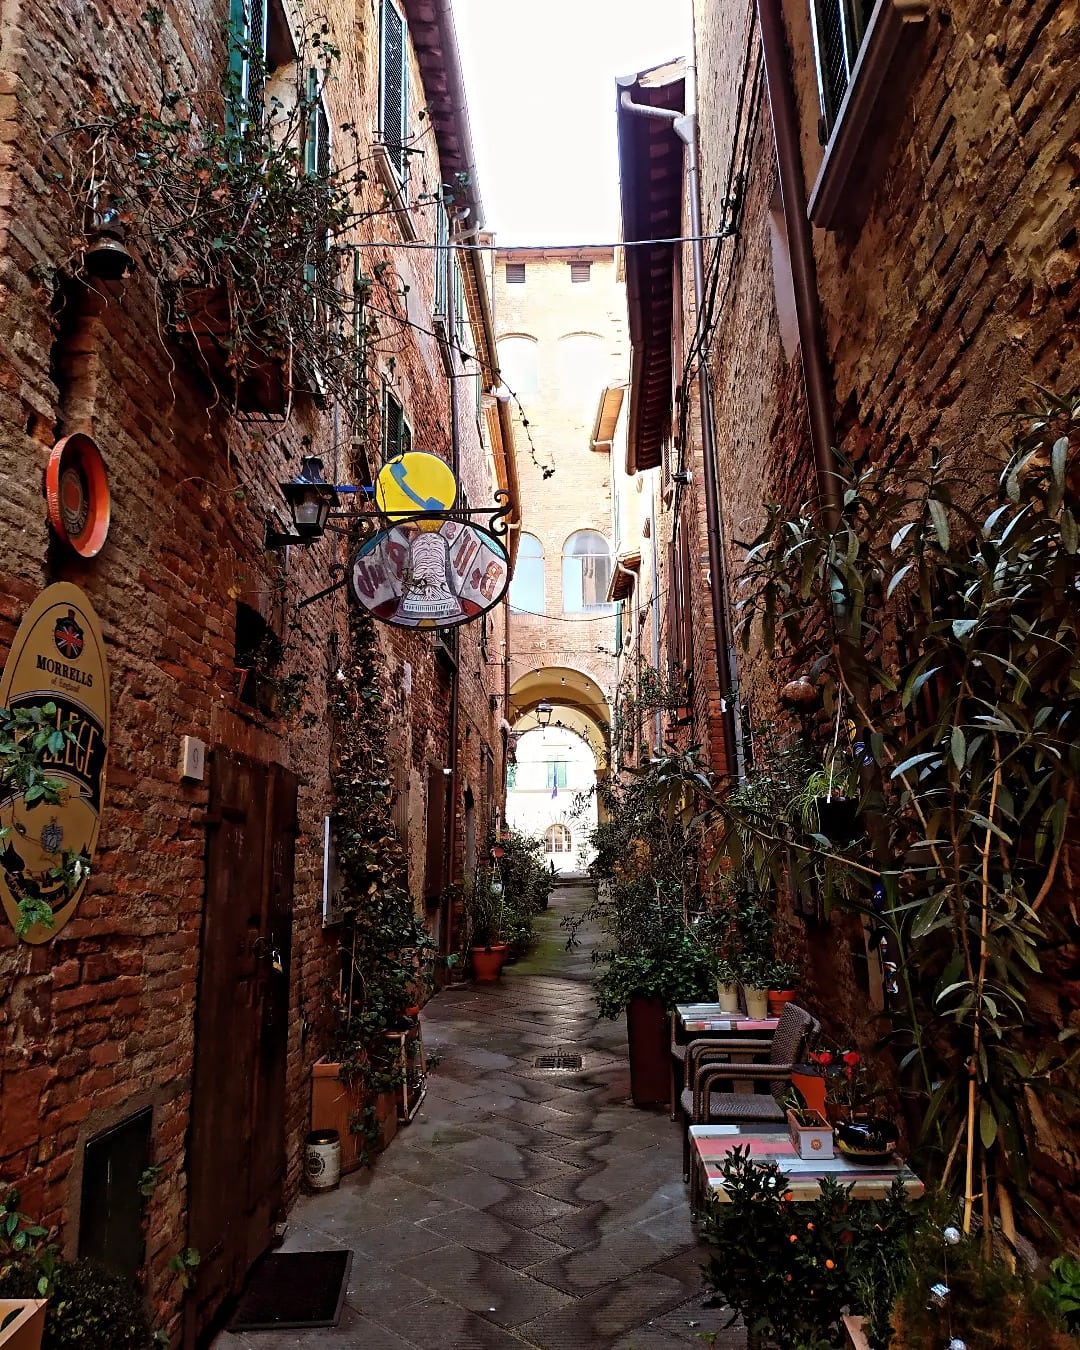 Narrow Italian streets